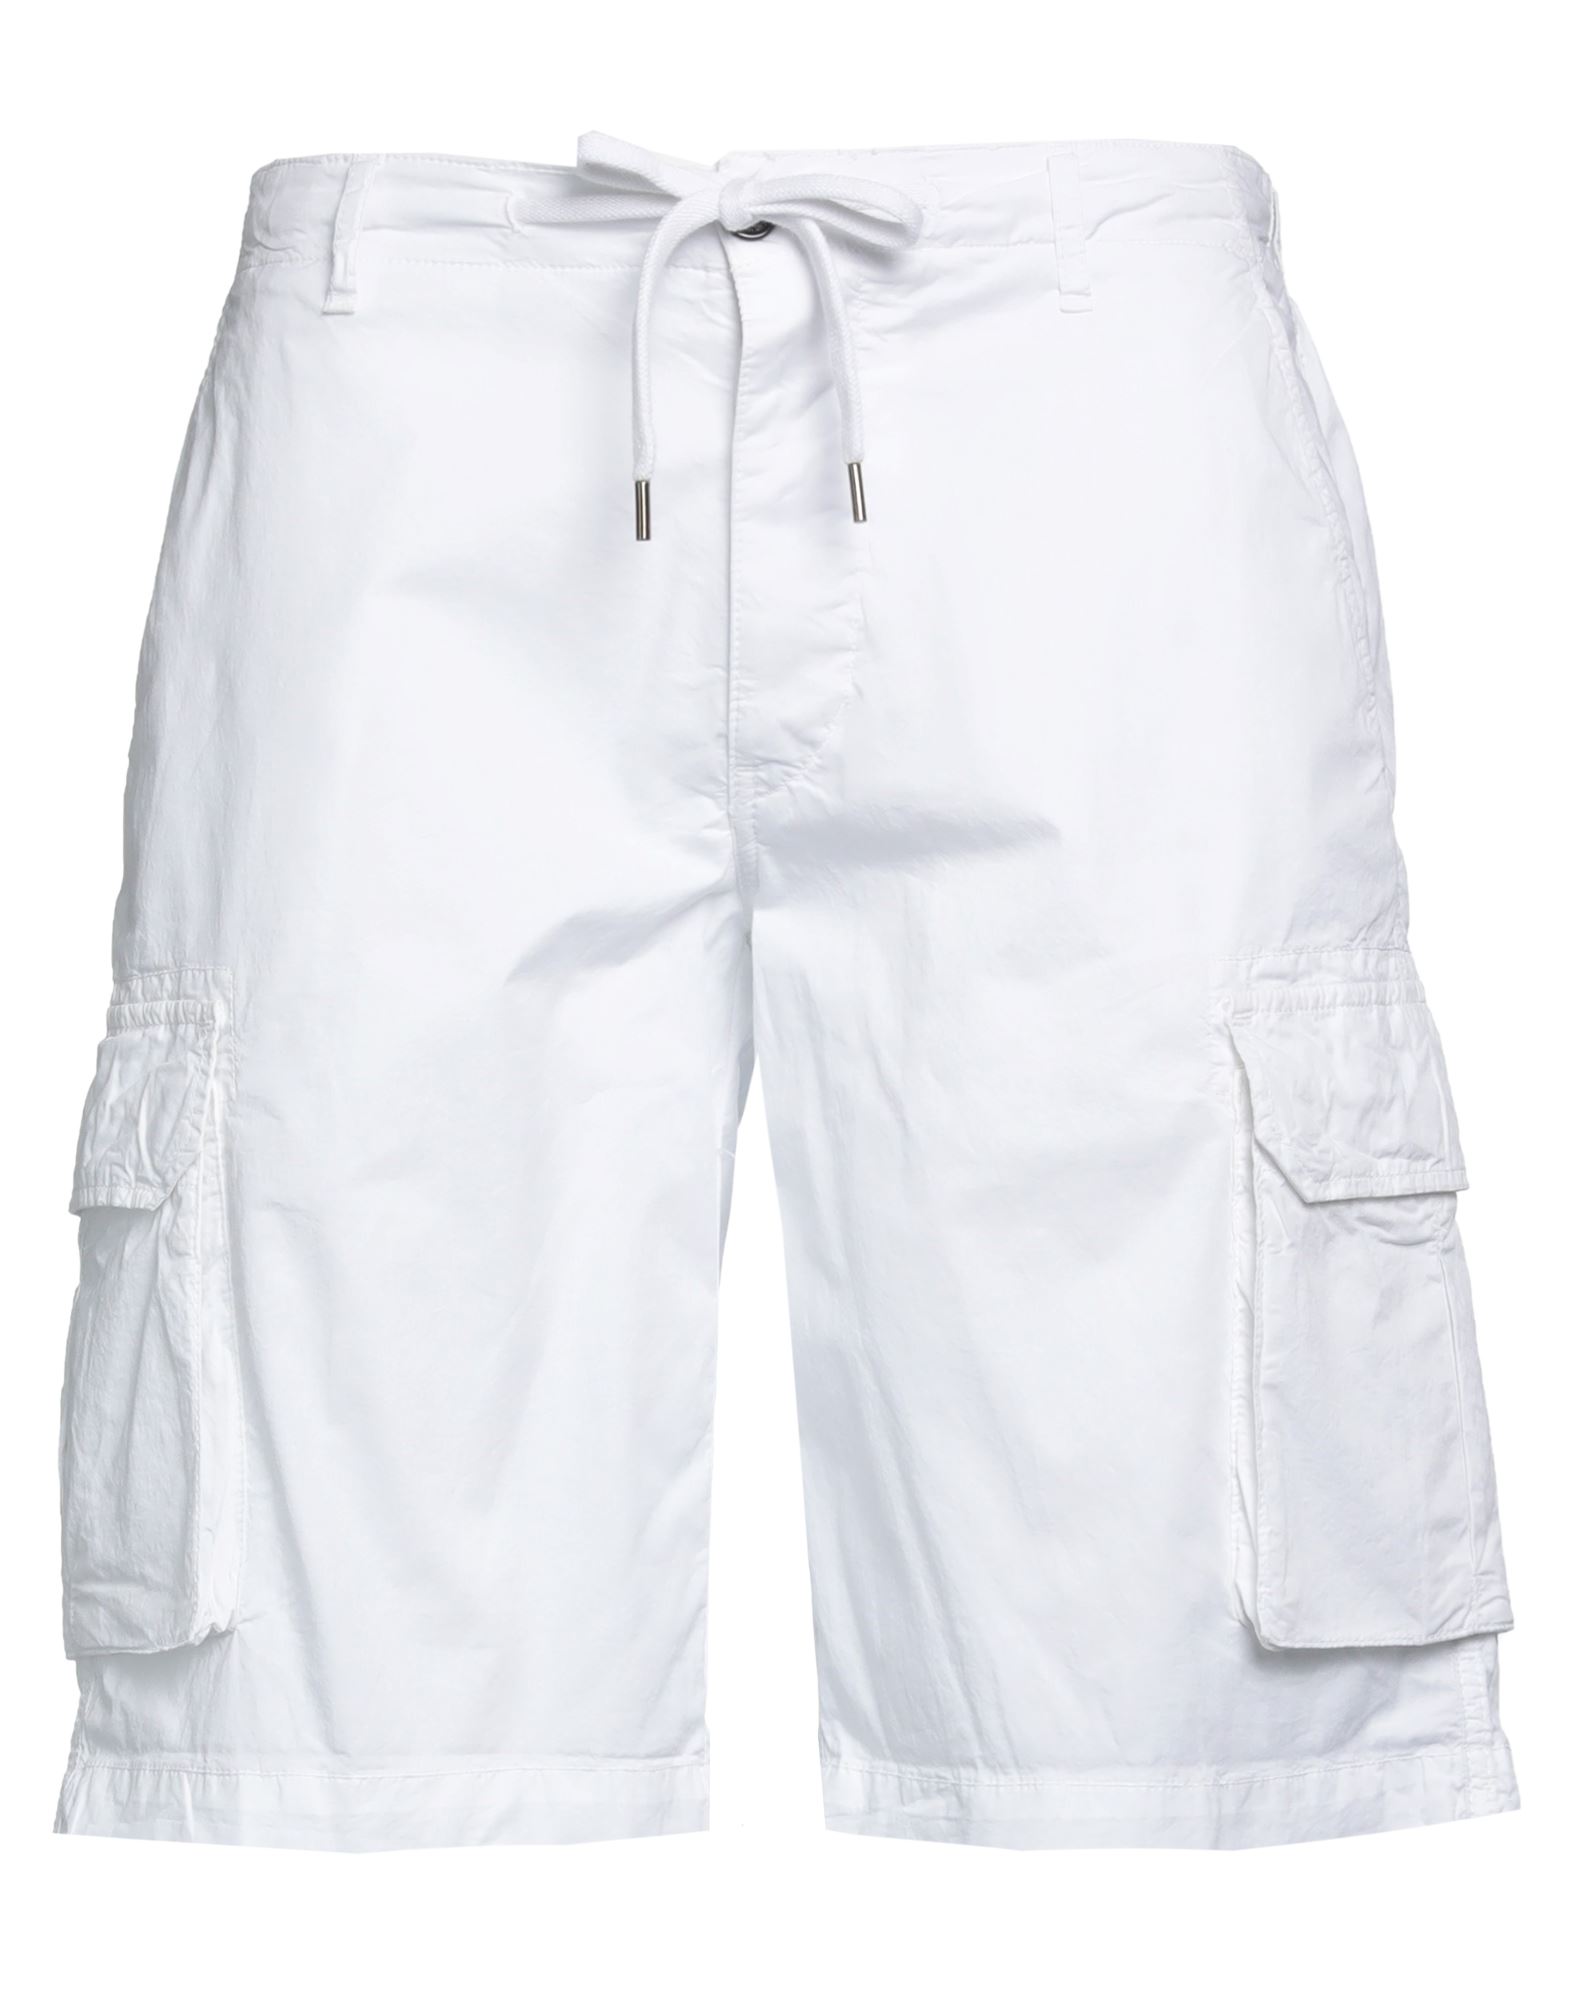 40weft Man Shorts & Bermuda Shorts White Size 30 Cotton, Elastane